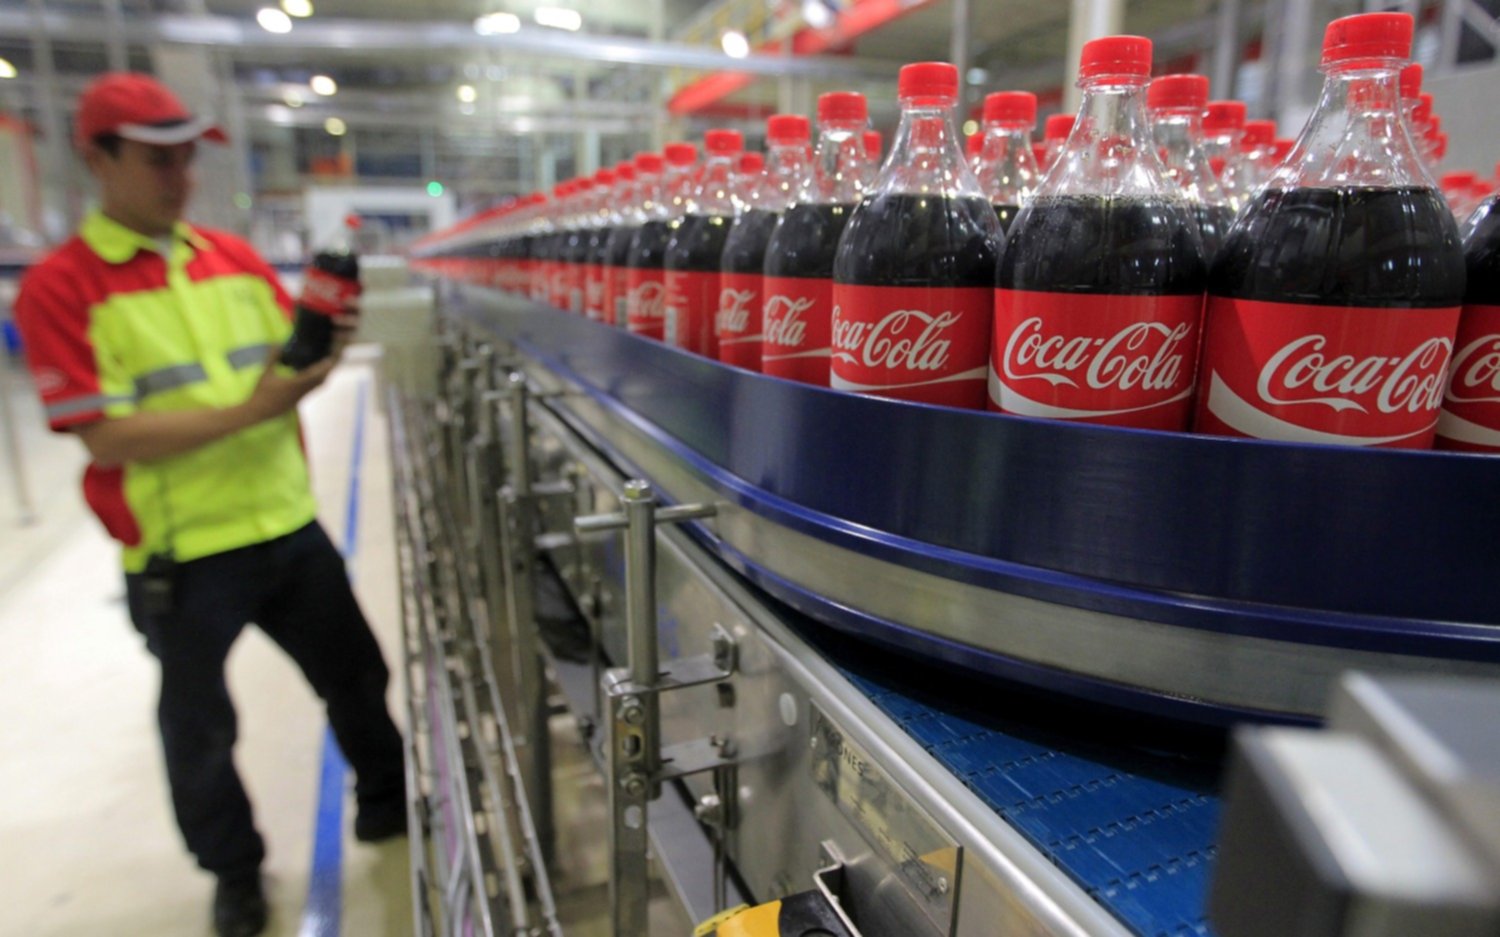 Coca-Cola desmintió "categóricamente" un traslado de sus operaciones en Argentina